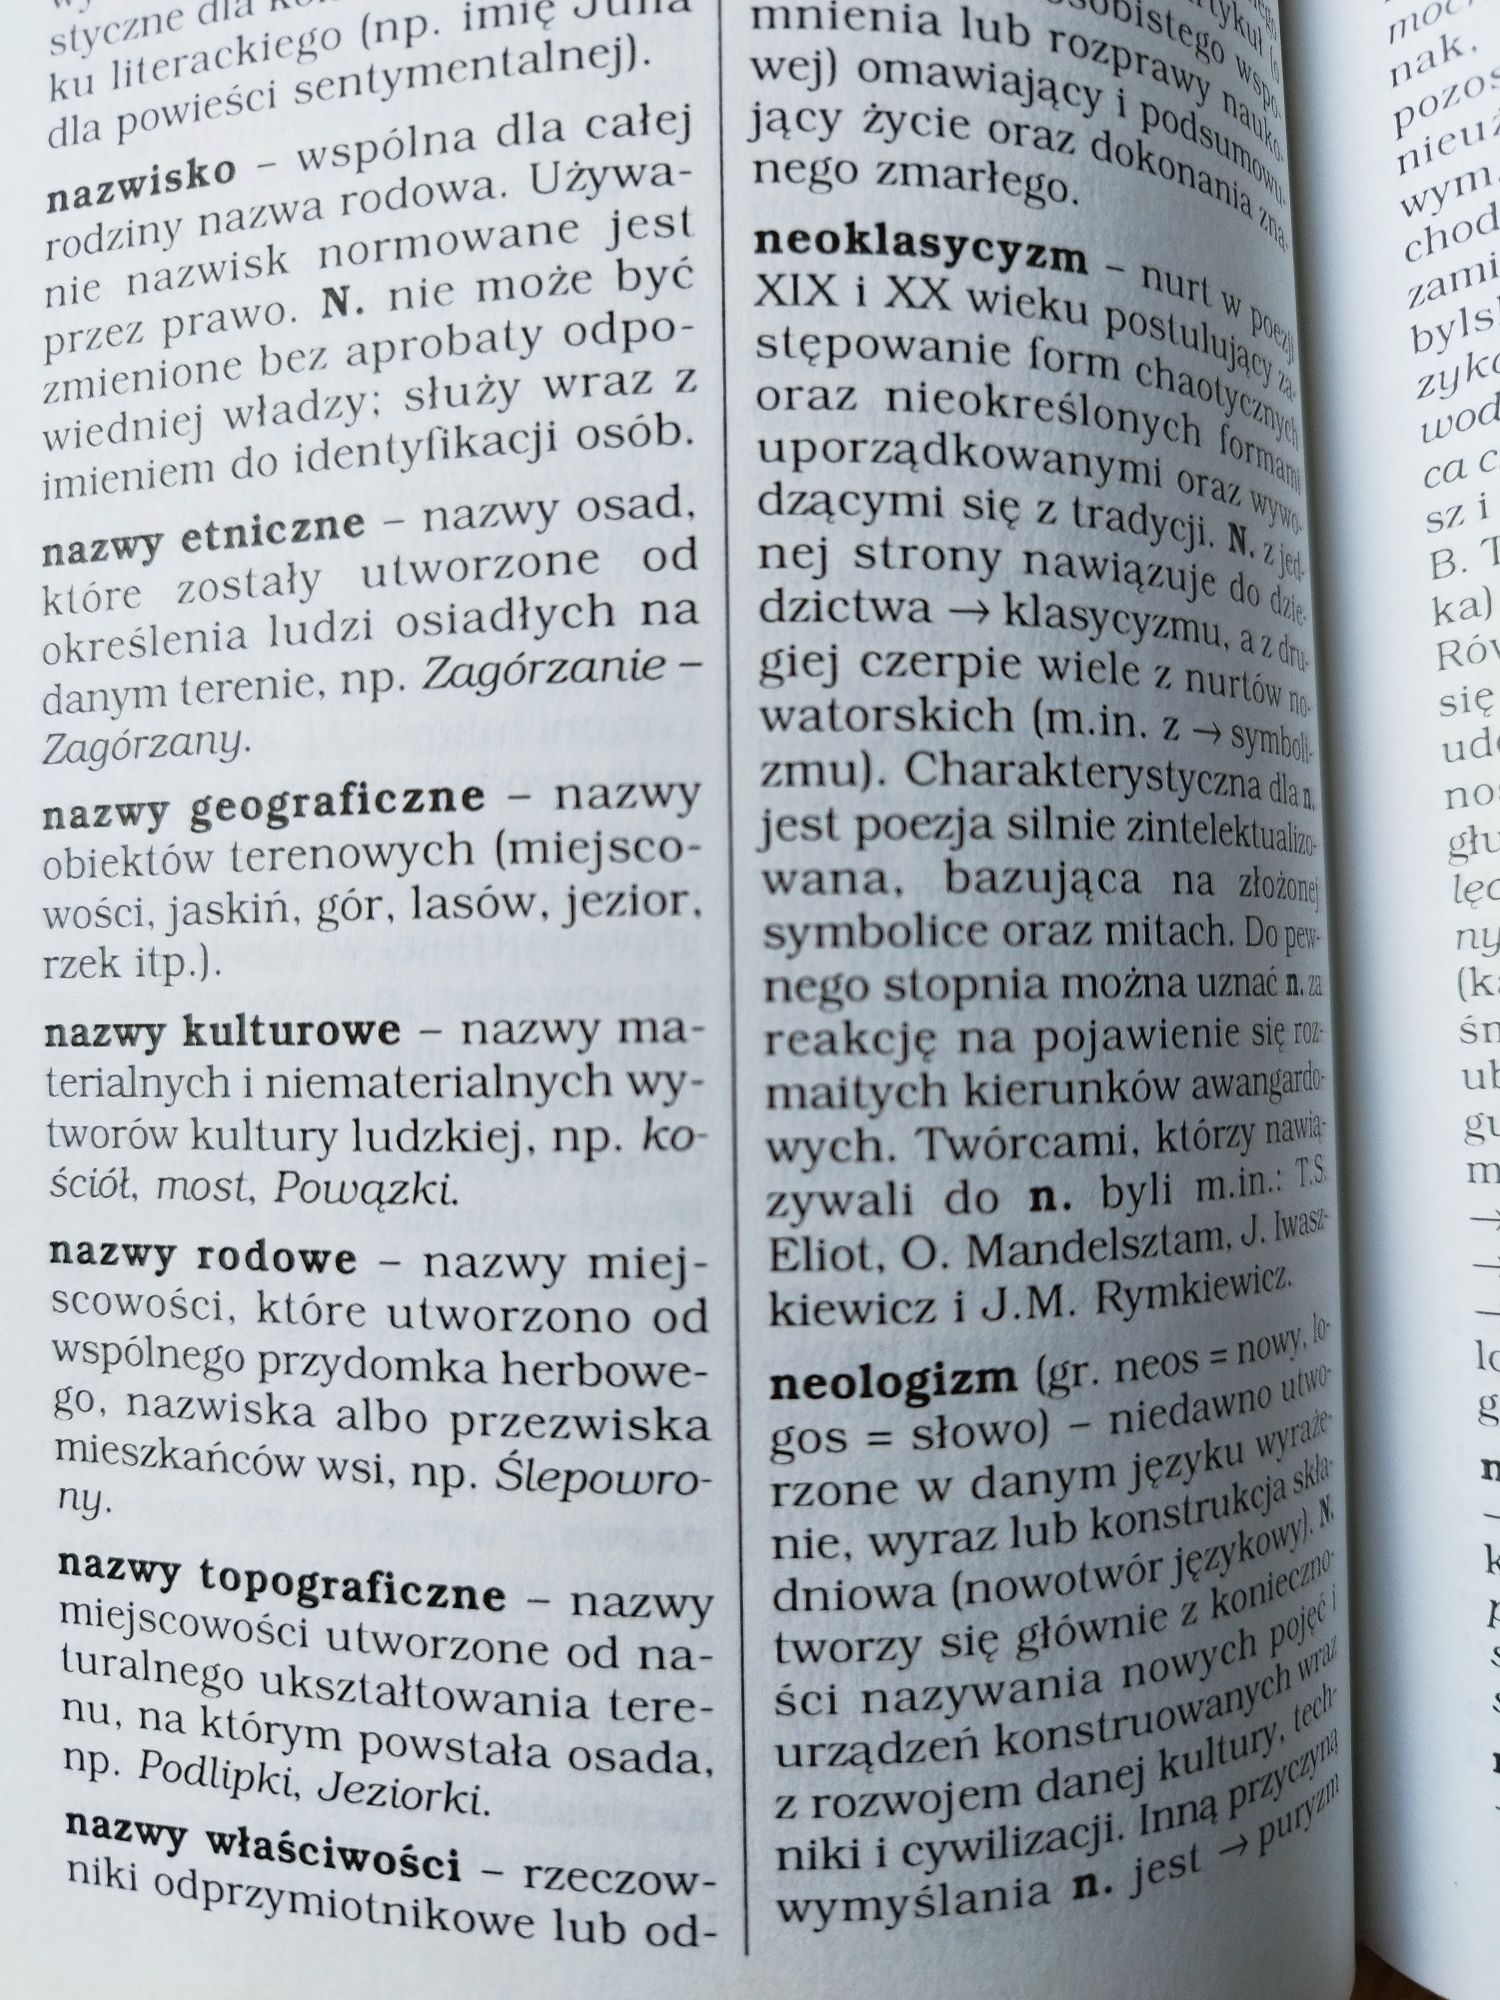 Słownik terminów literackich i gramatycznych